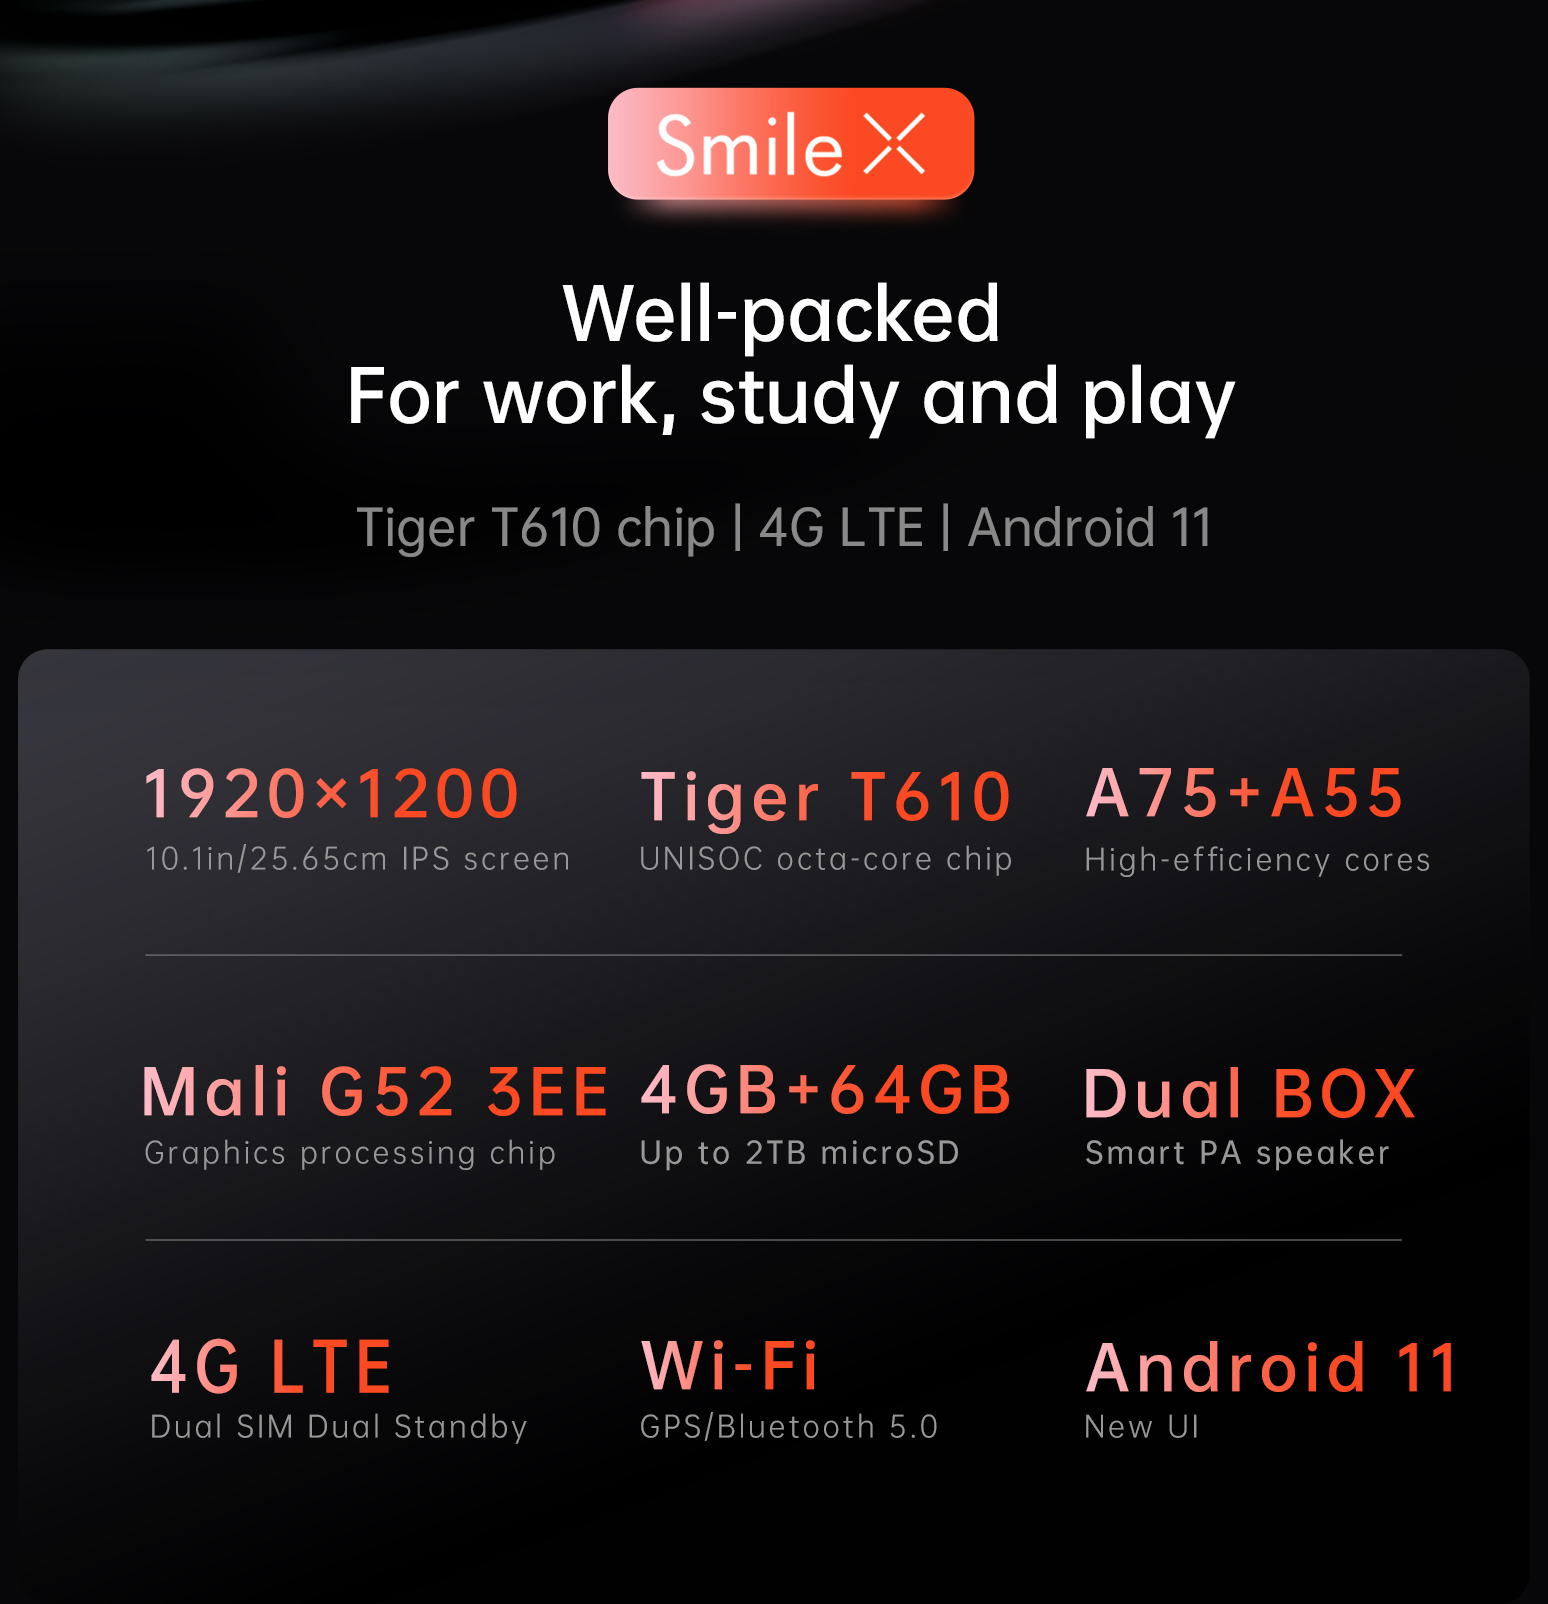 มุมมองเพิ่มเติมเกี่ยวกับ 【NEWEST】Alldocube Smile X Tablet 10.1 inch FHD Screen T610 Octa-Core 4GB RAM 64GB ROM Android 11 Dual Band WiFi Dual 4G Phone Call Tablet PC